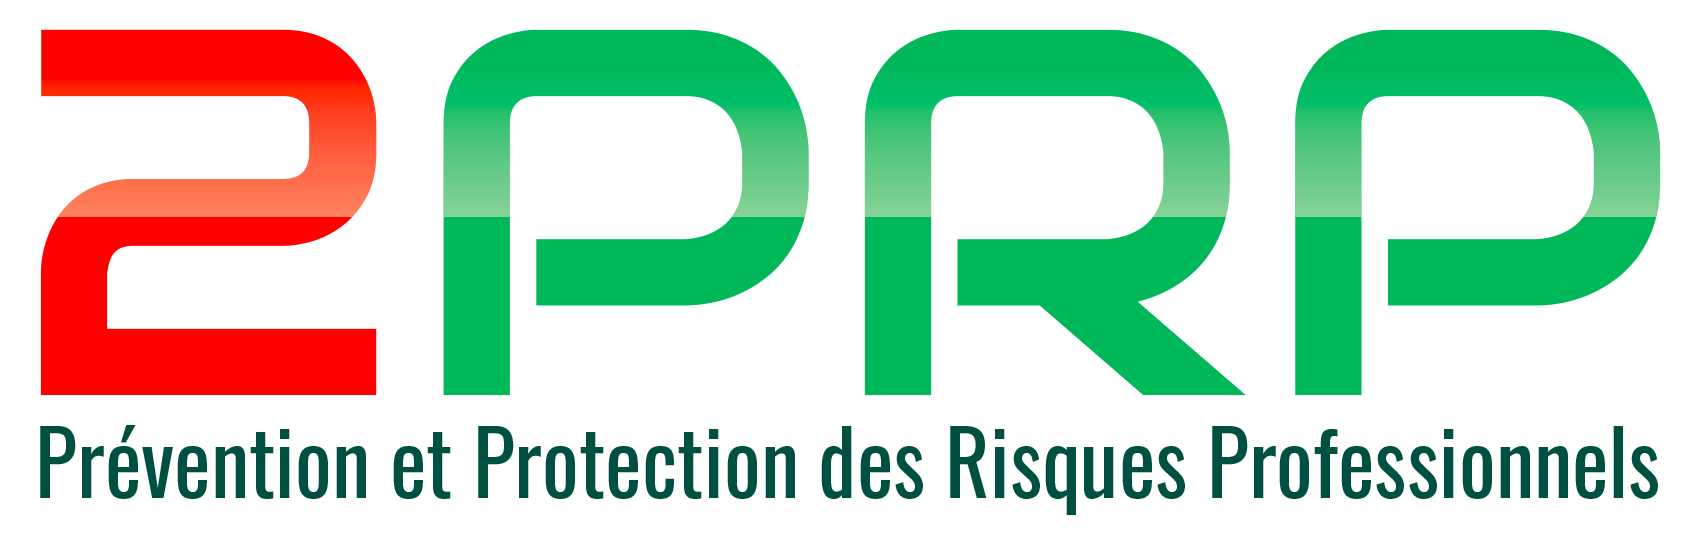 2PRP - Prévention et Protection des Risques Professionnels